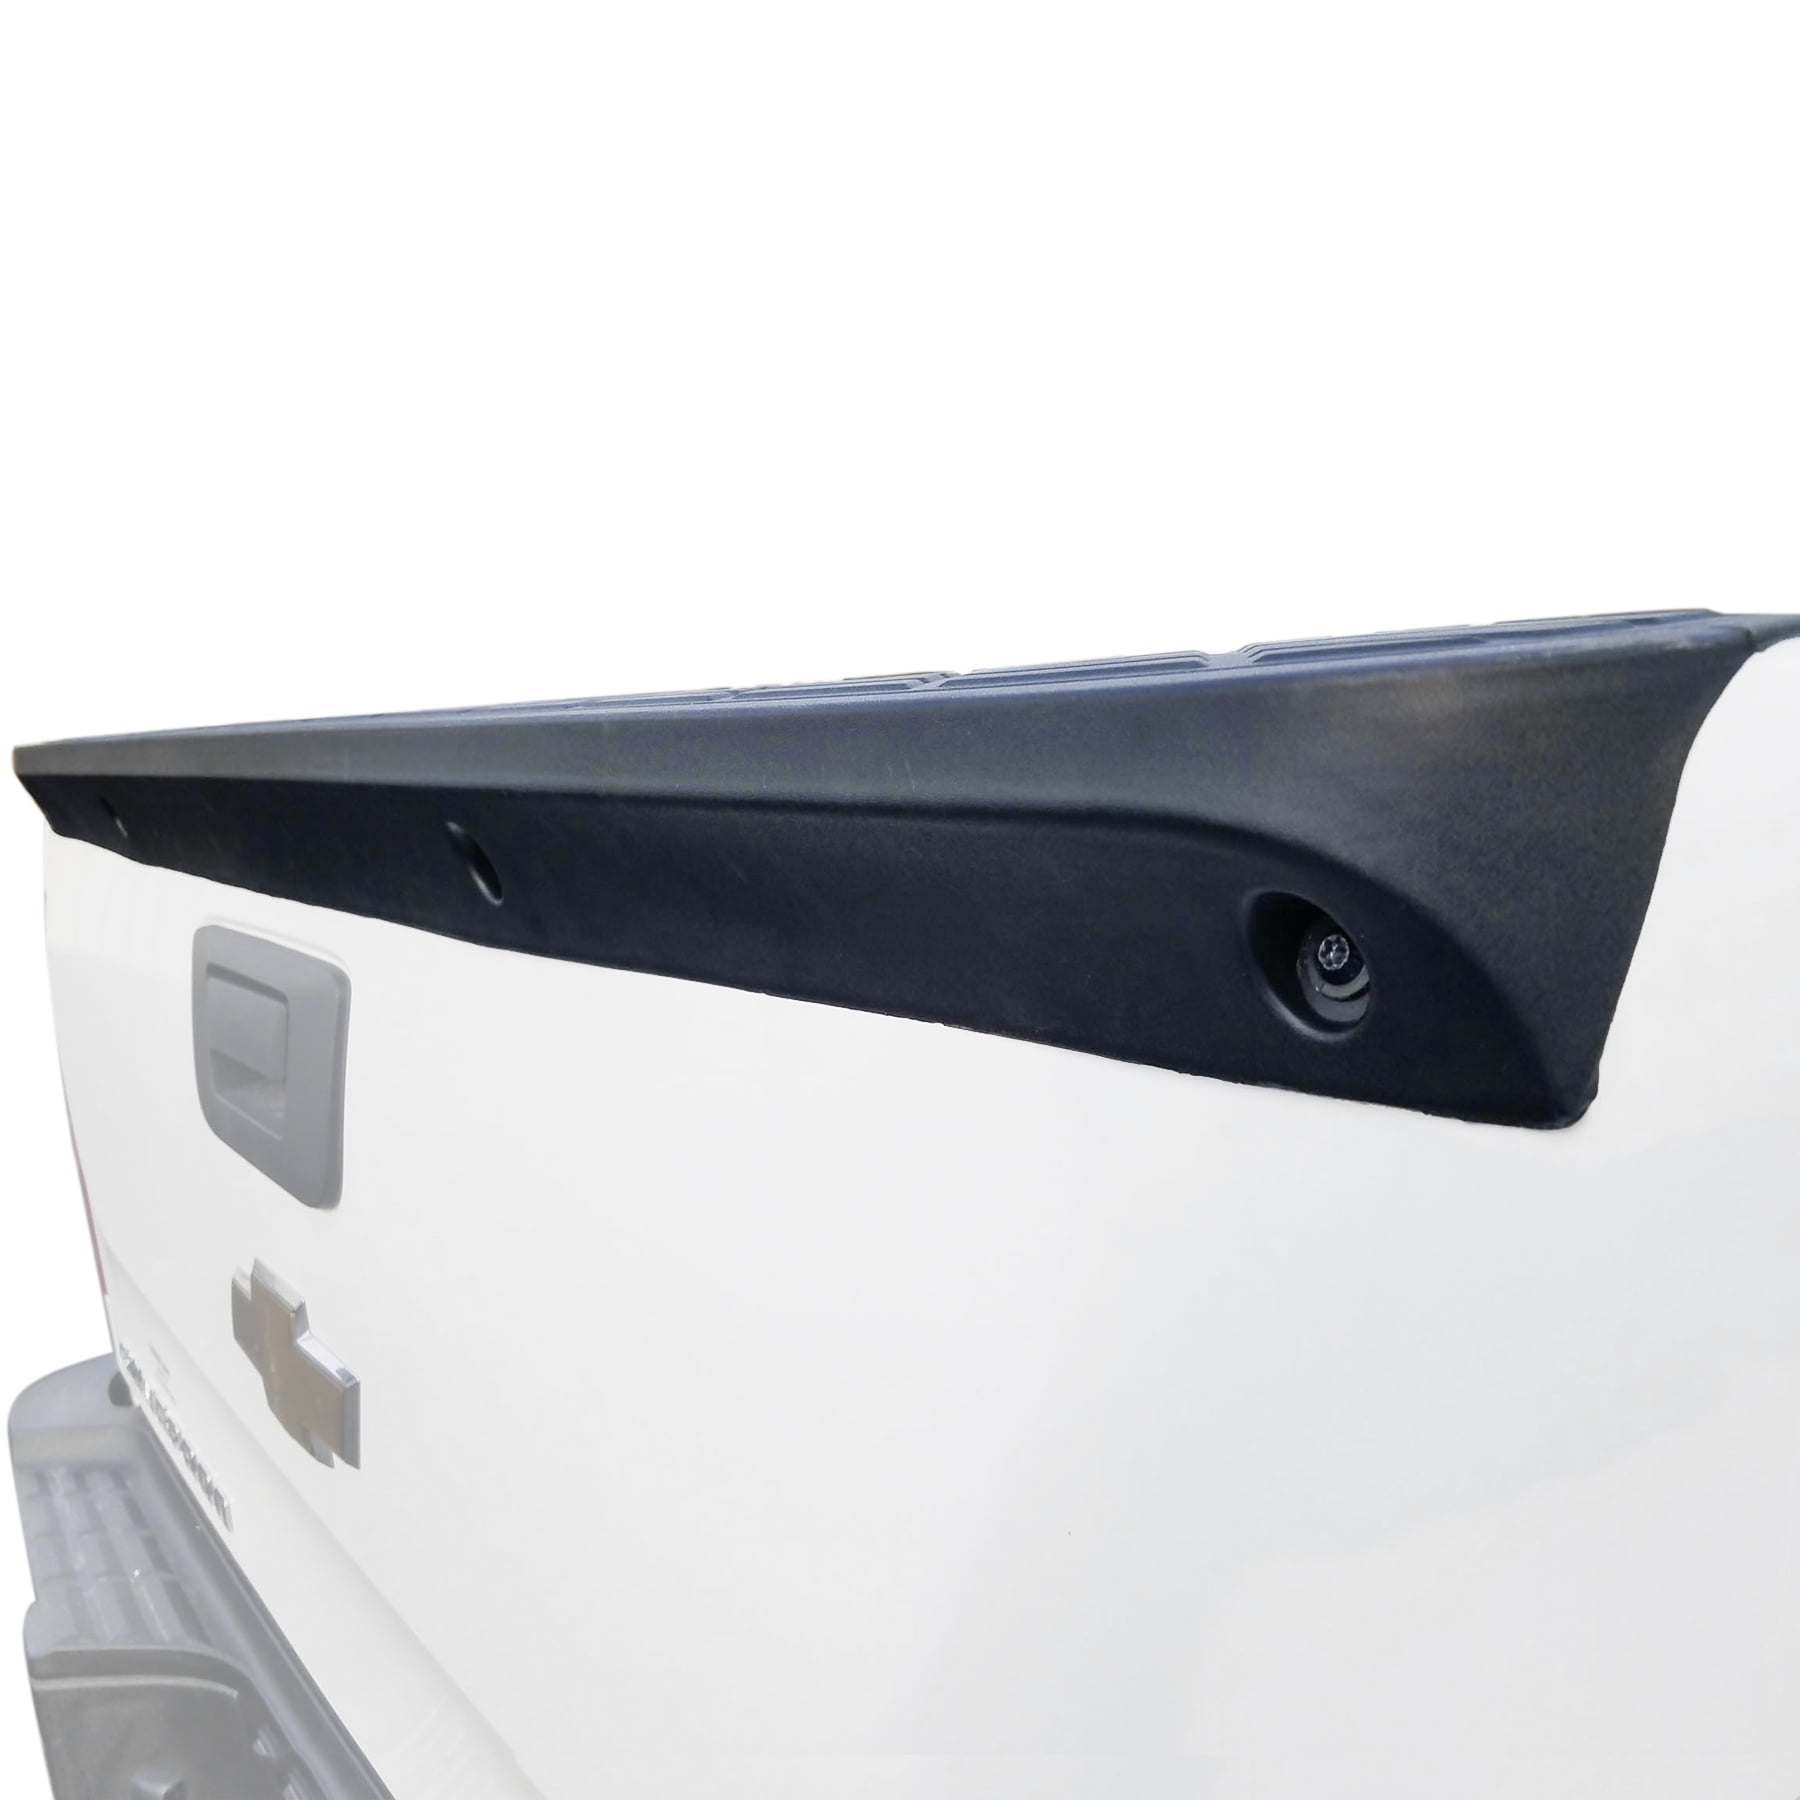 Tailgate Molding Cap Upper For Silverado Sierra 2500HD 3500HD 2007-2014